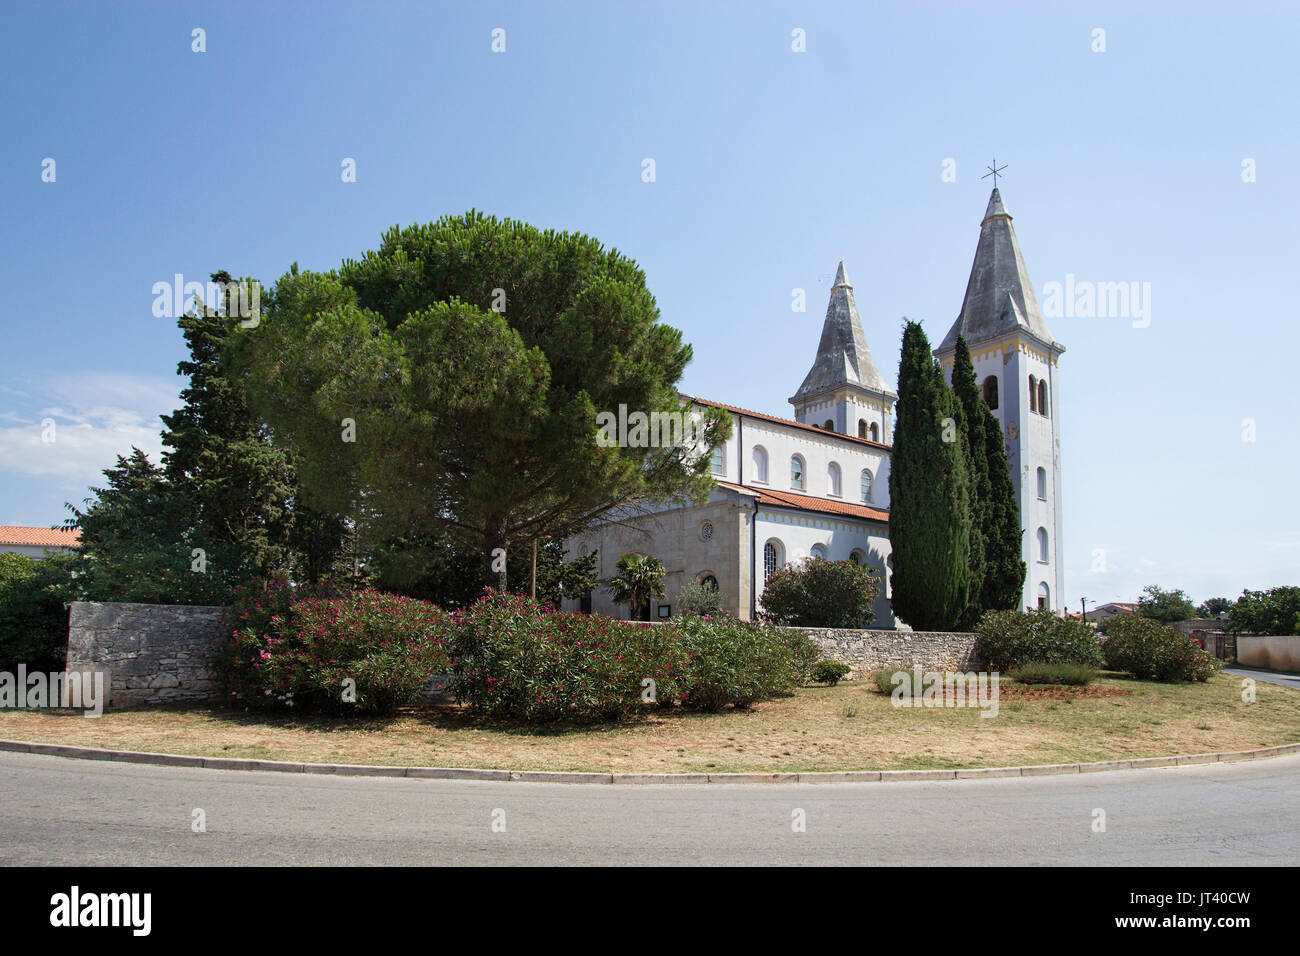 Saint Agnes Church, église catholique romaine dans la partie croate de Medulin resort sur la Riviera d'Istrie. Également connu sous le nom de Sanky Agnes Church Banque D'Images